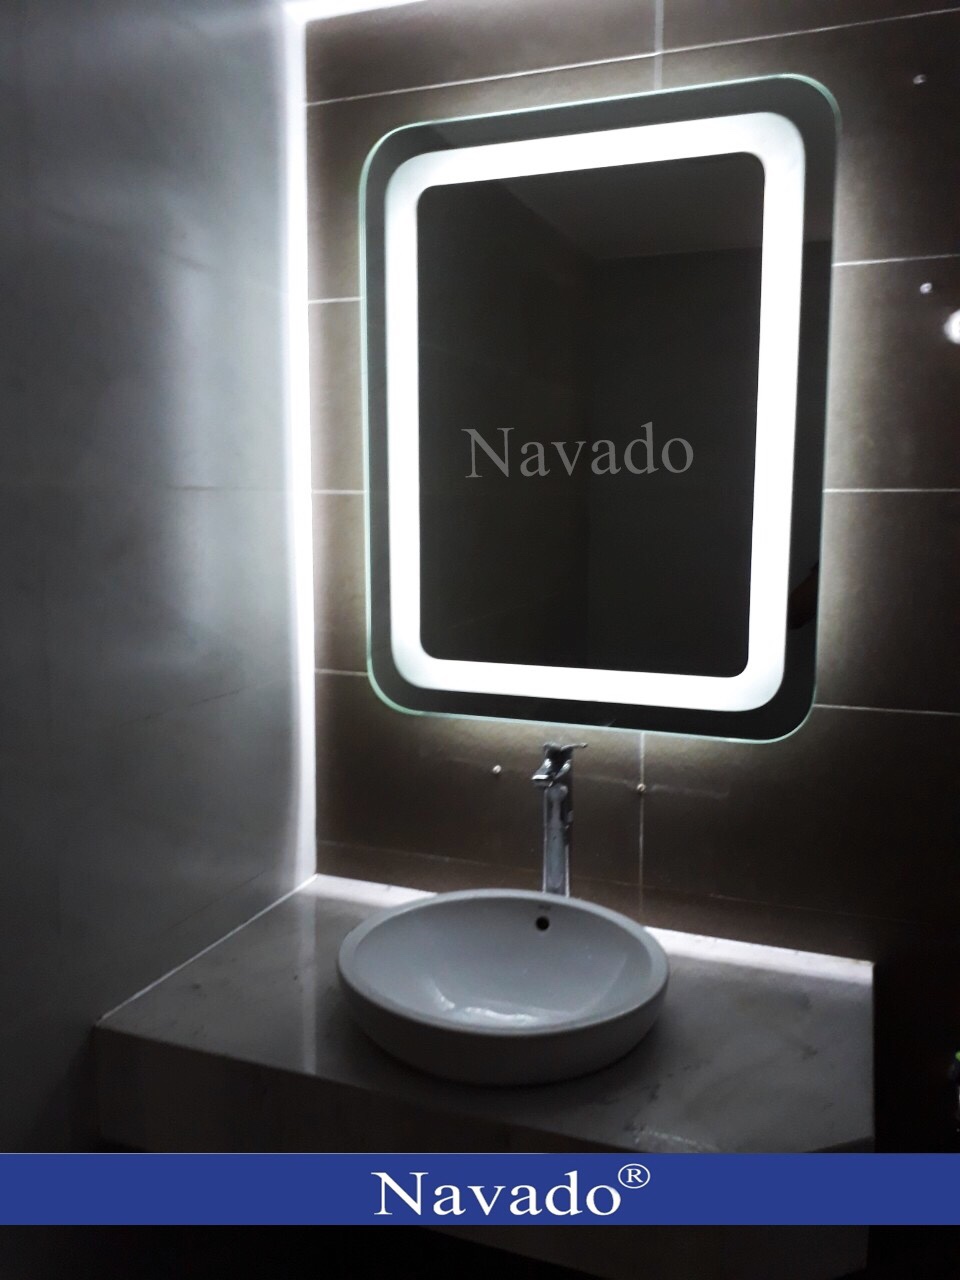 Tận hưởng những khoảnh khắc tuyệt vời trong phòng tắm của mình với gương phòng tắm led hắt Navado. Sản phẩm này mang lại không gian sáng tạo và hiện đại cho ngôi nhà của bạn. Với độ bền và chất lượng tốt, bạn có thể yên tâm sử dụng sản phẩm này trong thời gian dài.